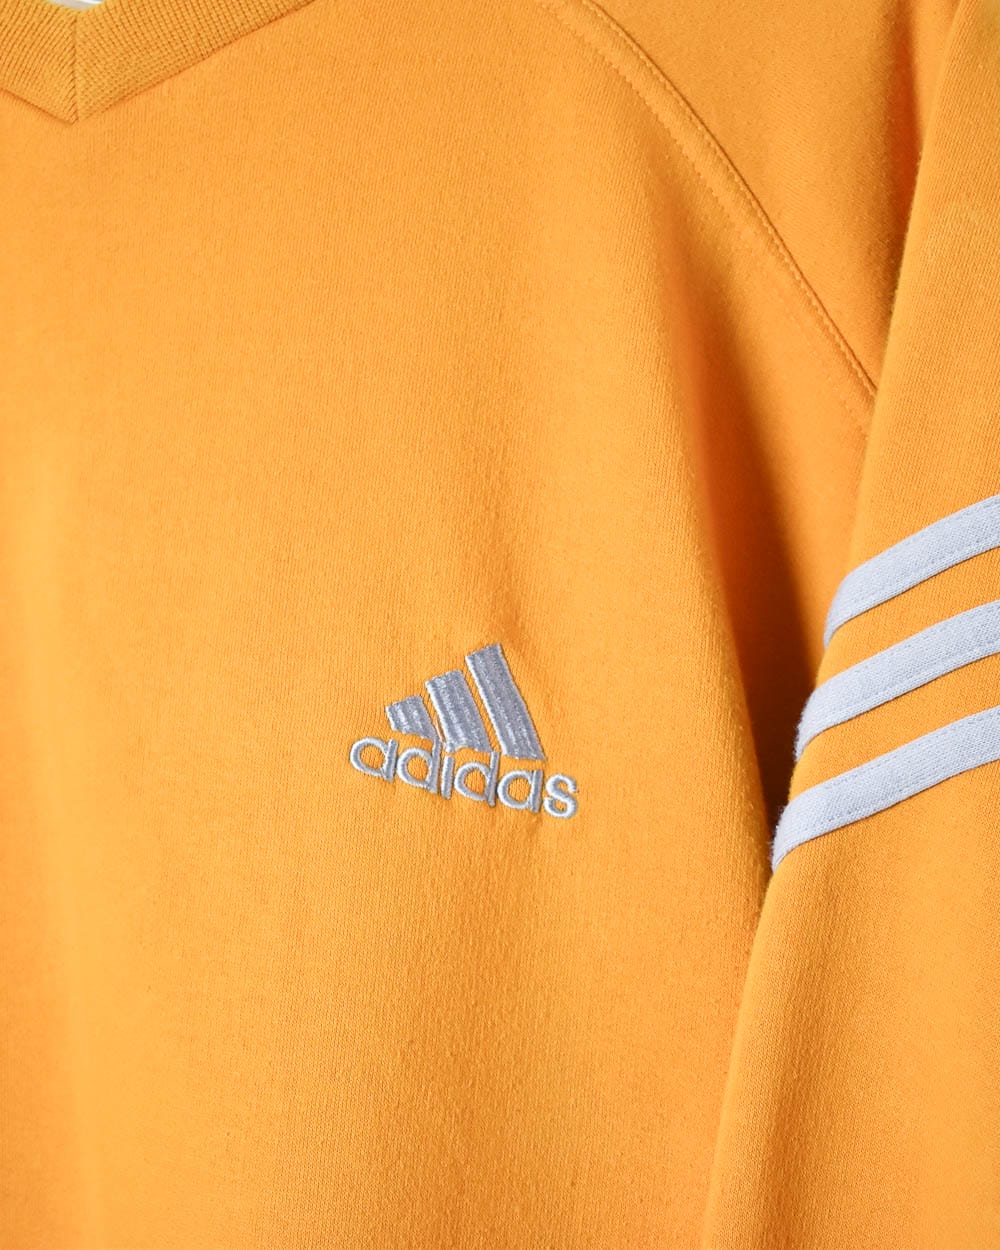 Orange Adidas Sweatshirt - X-Large